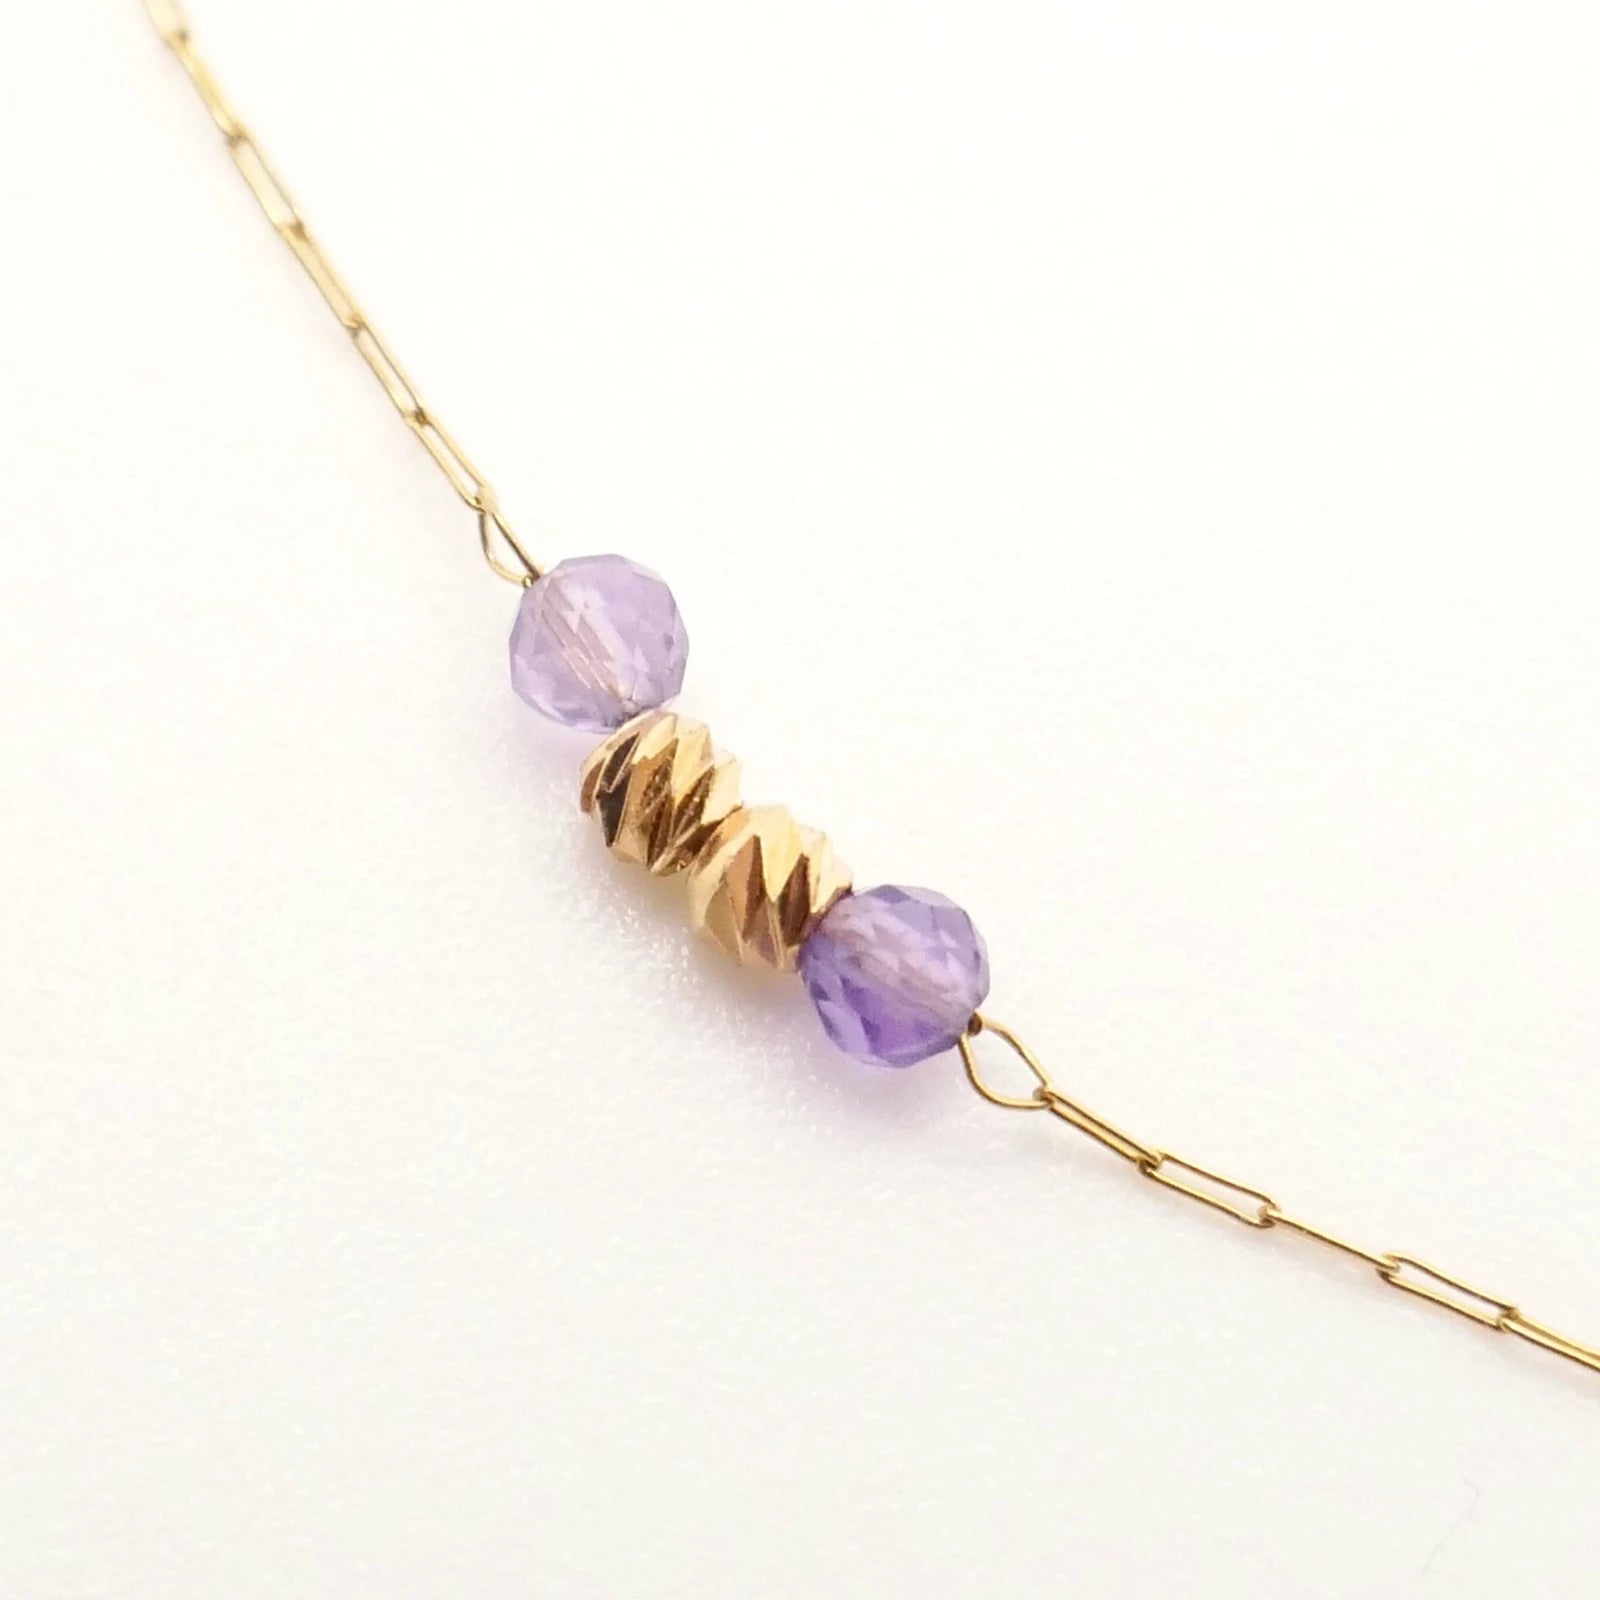 collier d'oreilles bijou unique entre collier et boucles d'oreilles pour femme or et perles violettes